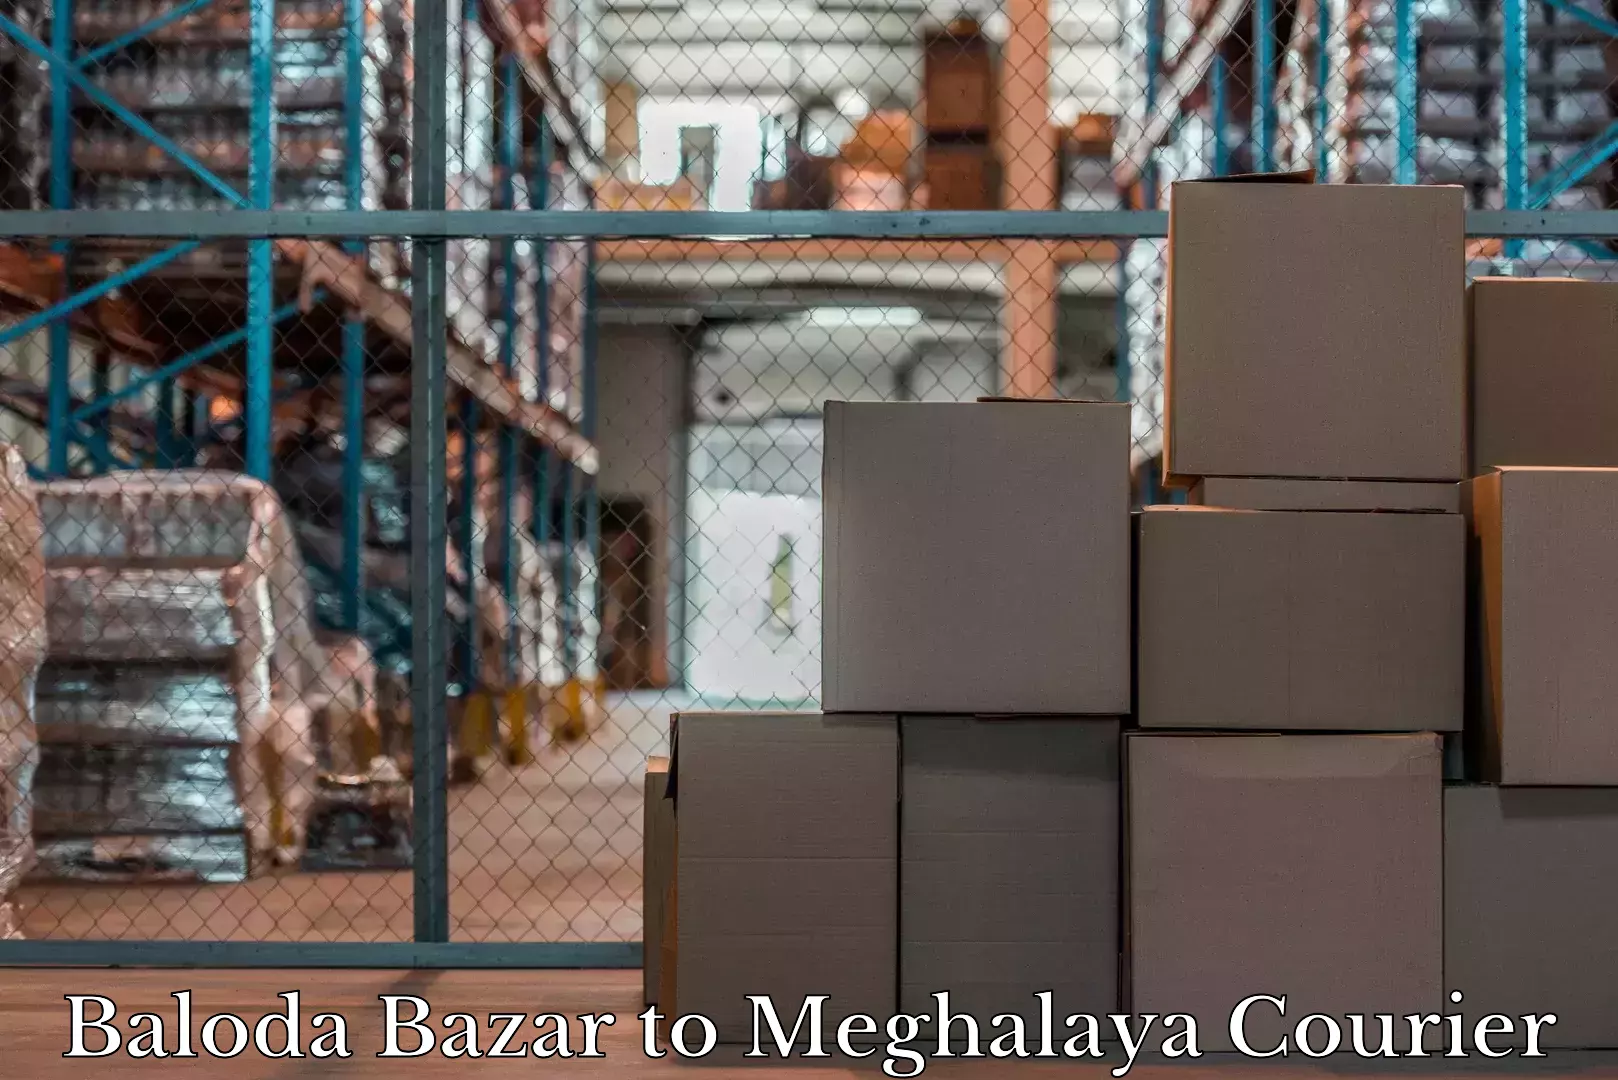 Luggage dispatch service Baloda Bazar to Meghalaya